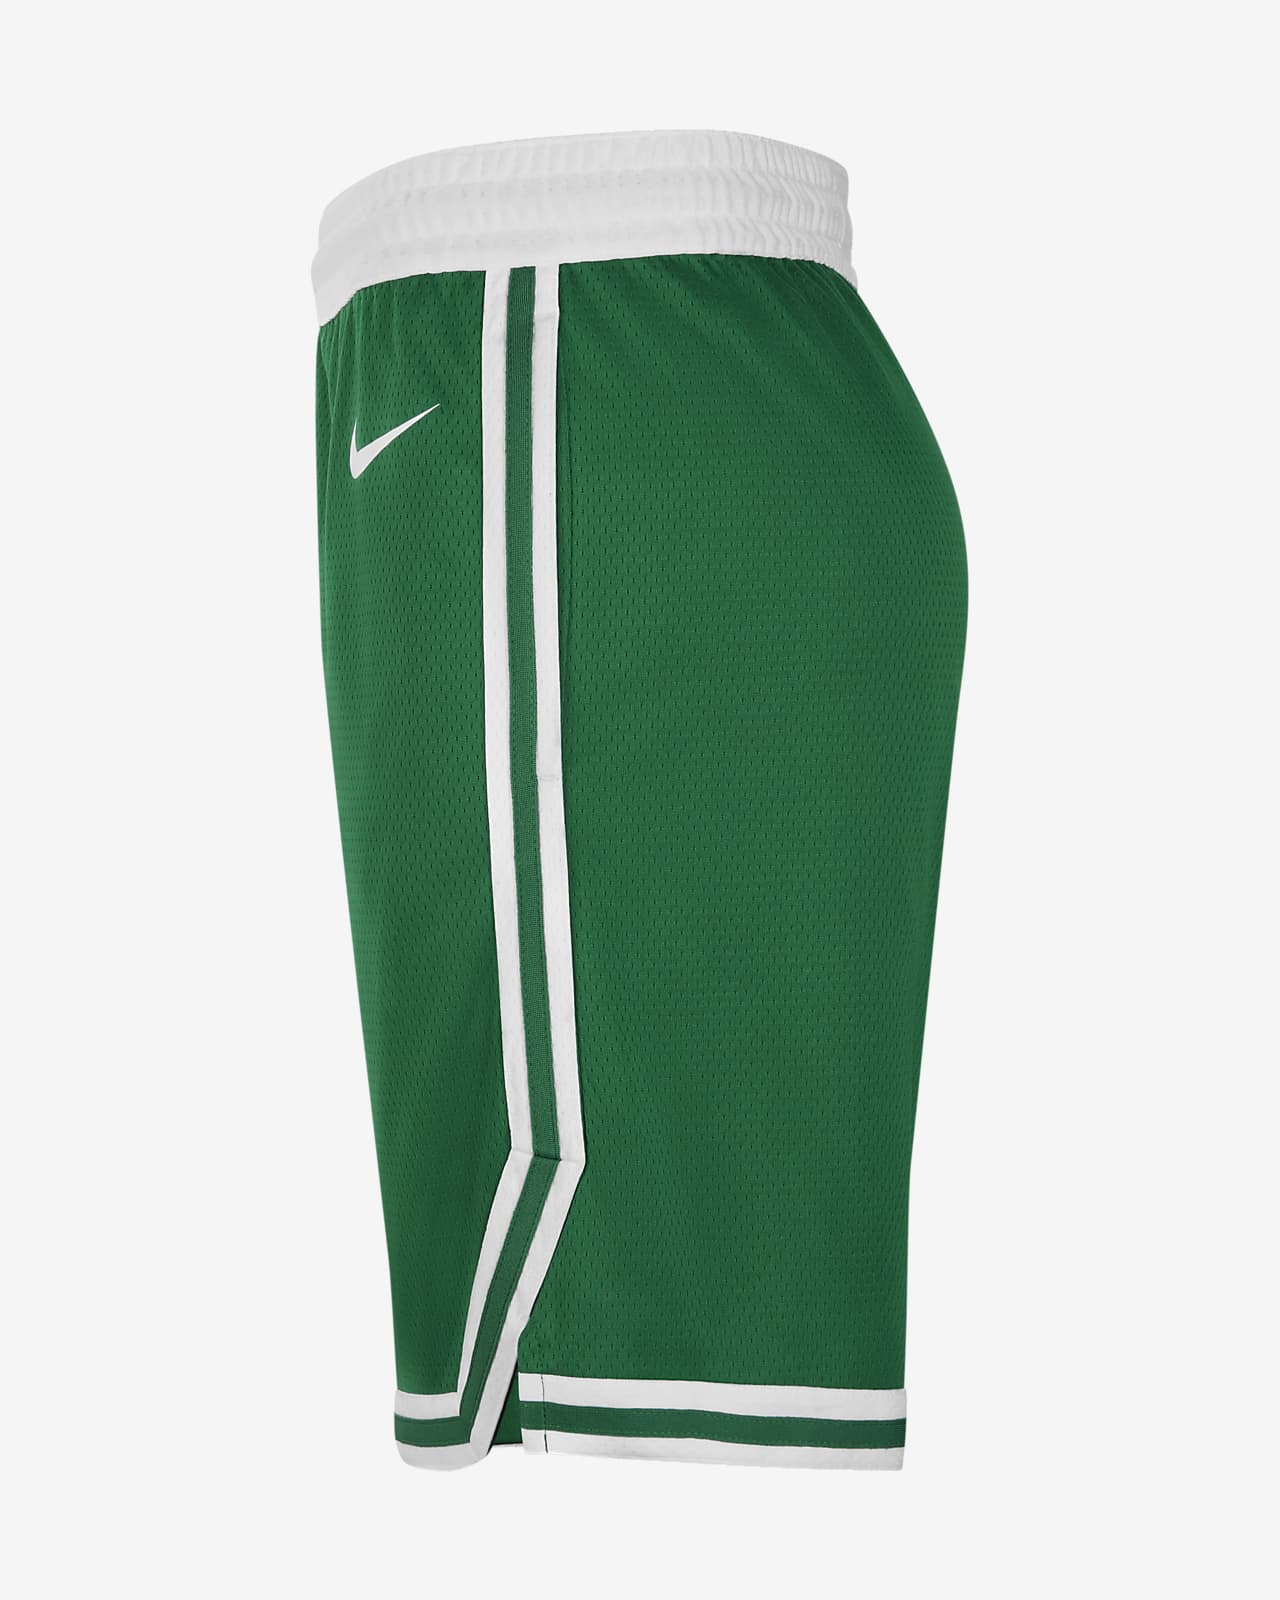 Boston Celtics Icon Edition Nike Swingman Pantalón corto - Hombre. Nike ES